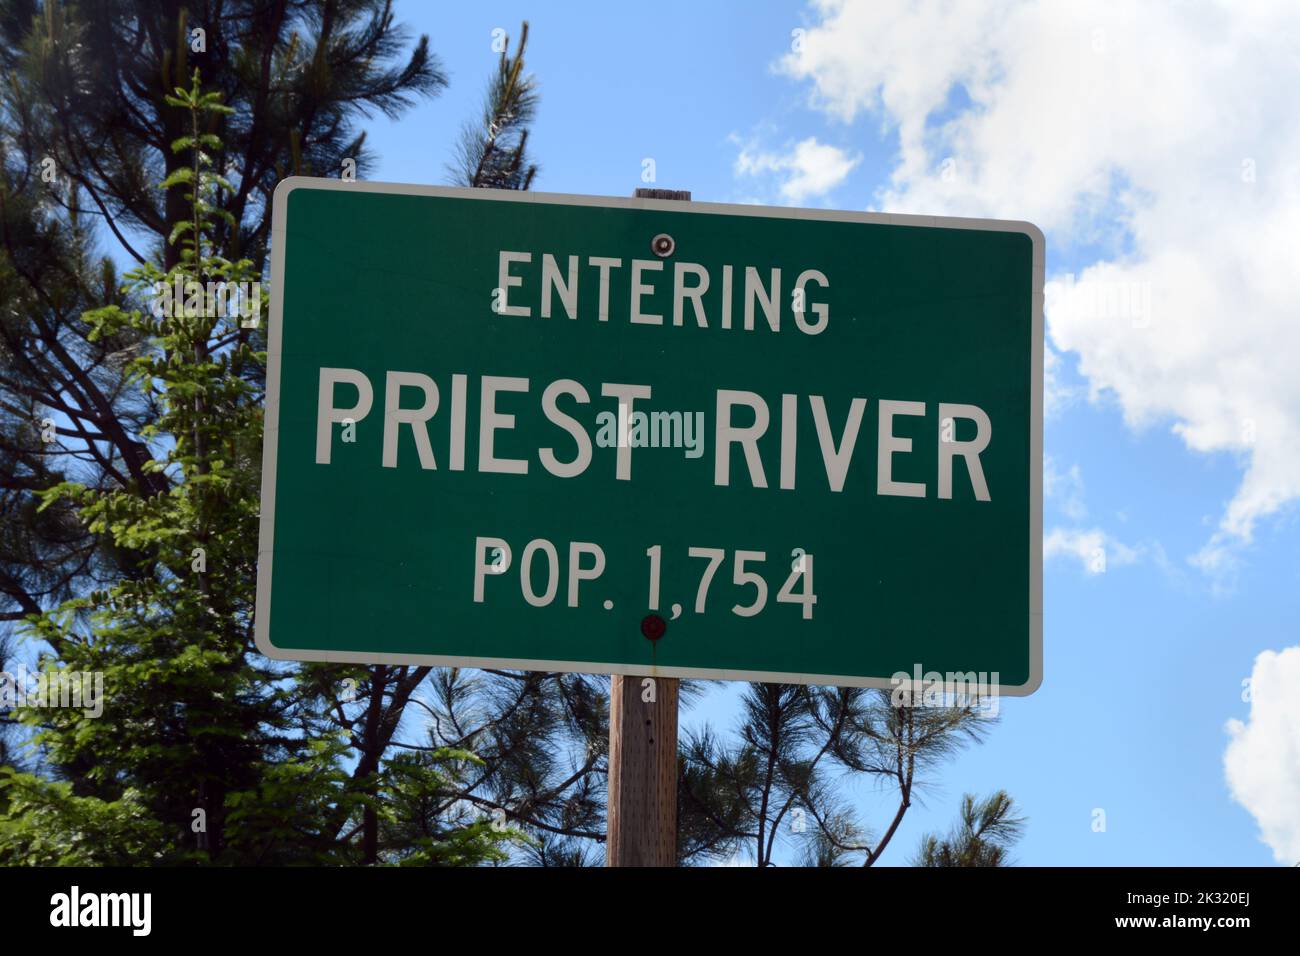 Un panneau routier aux limites de la ville de Priest River, Idaho, une petite communauté dans le comté de Bonner, dans le nord-ouest de l'Idaho Panhandle, États-Unis. Banque D'Images